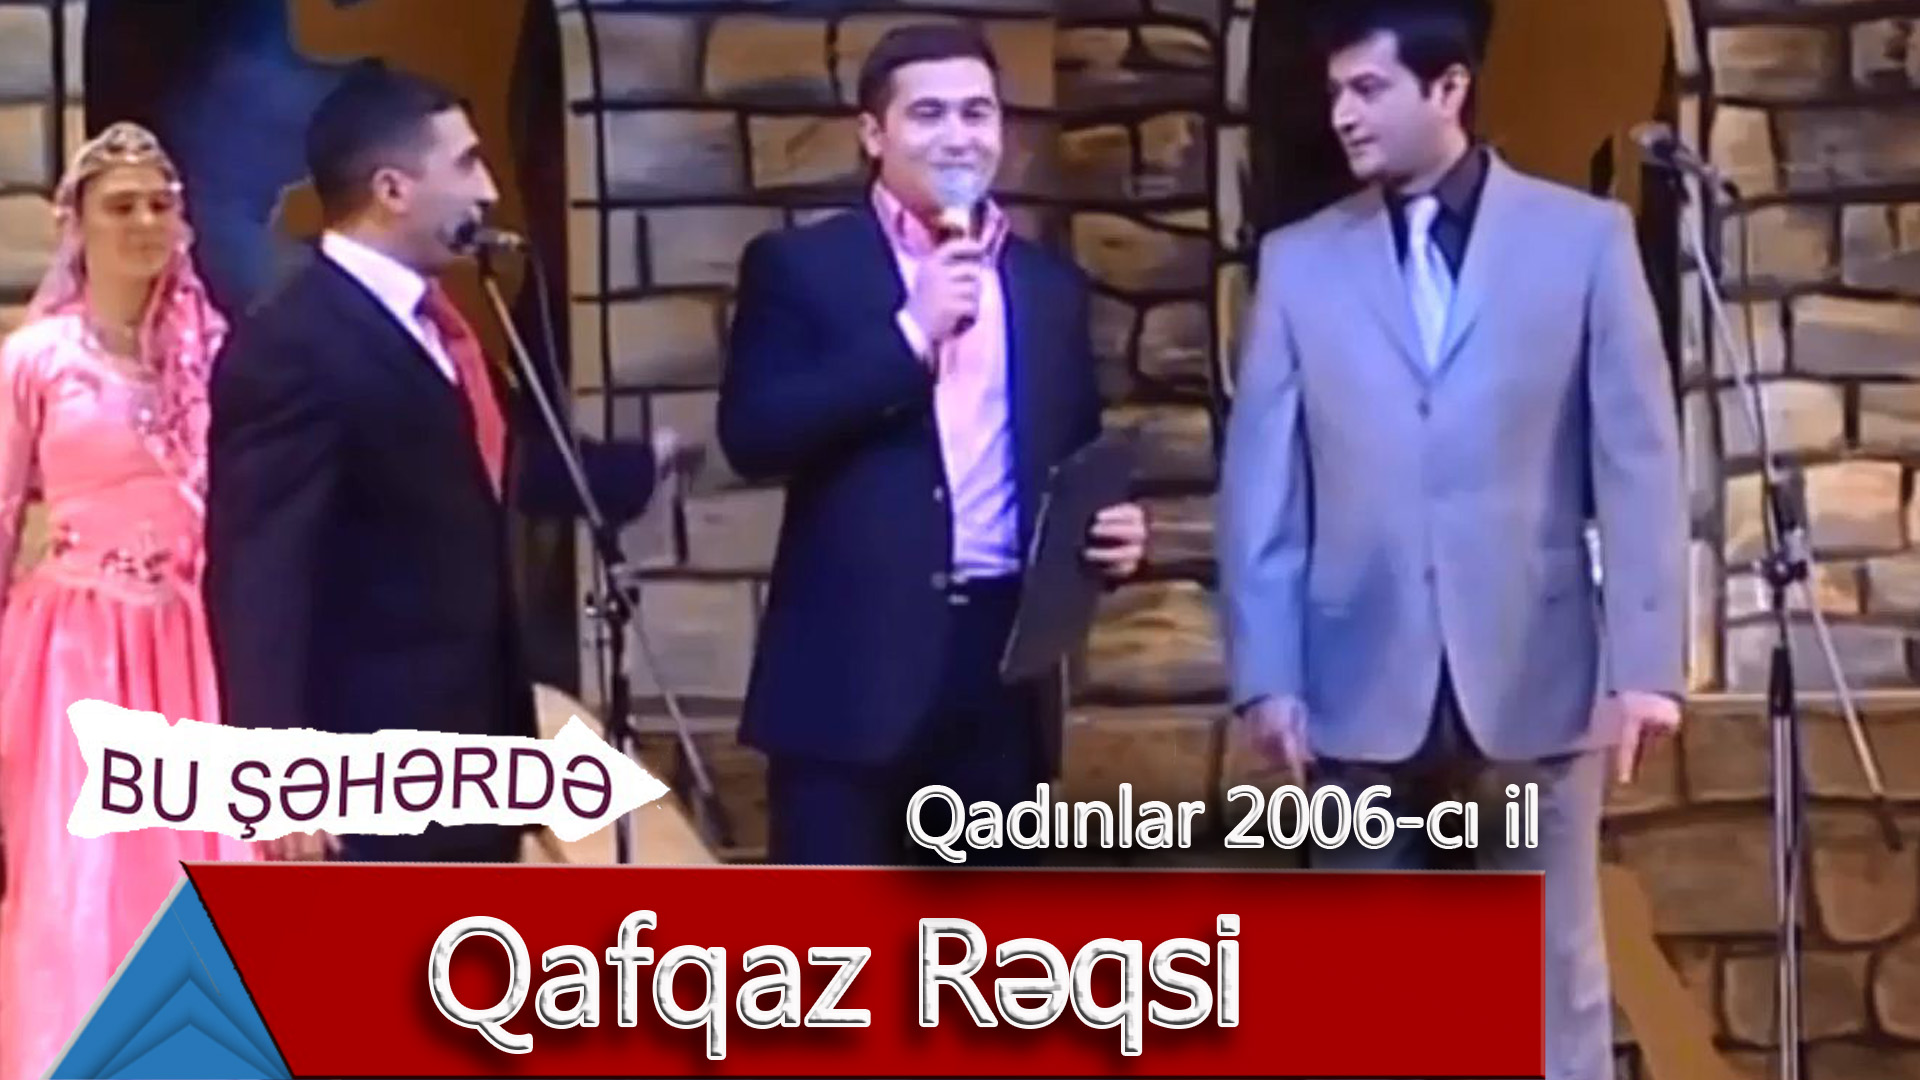 Bu Şəhərdə - Qafqaz Rəqsi (Qadınlar konserti, 2006)